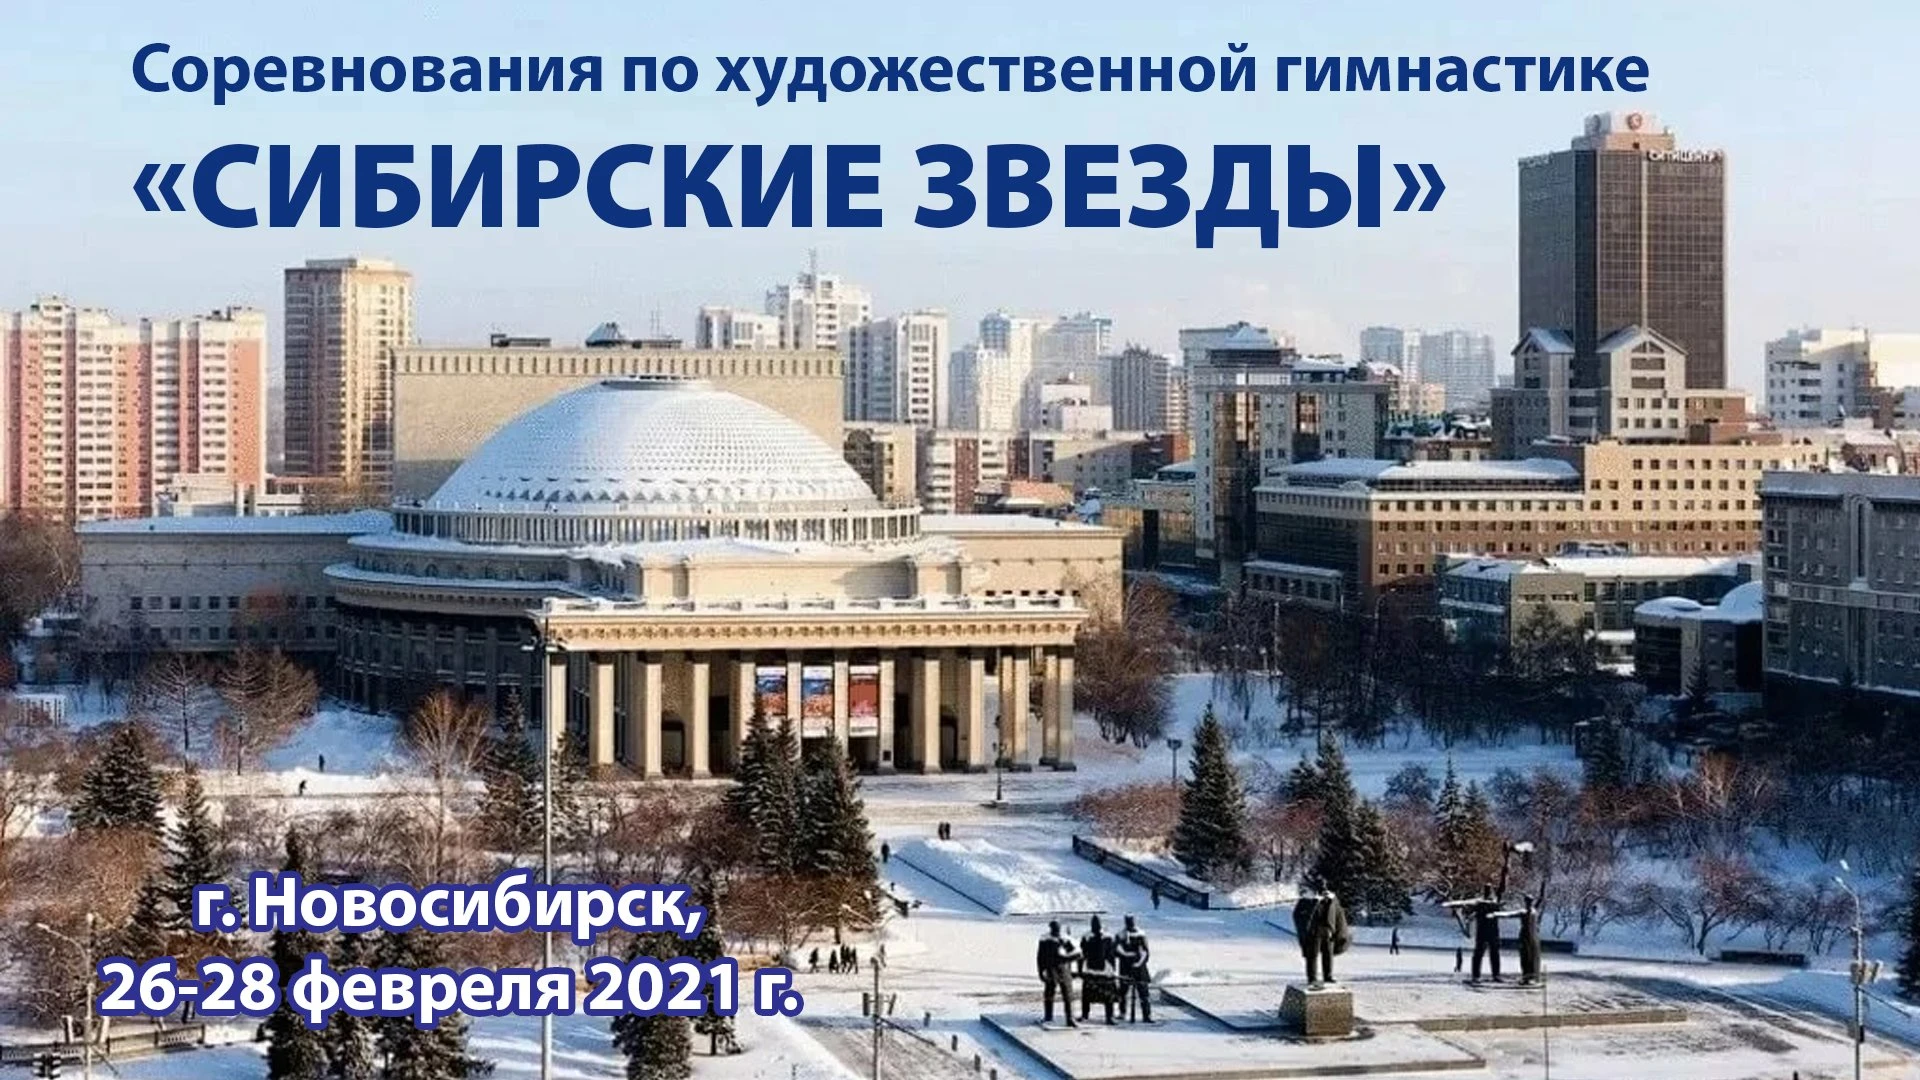 Новосибирск в каком веке